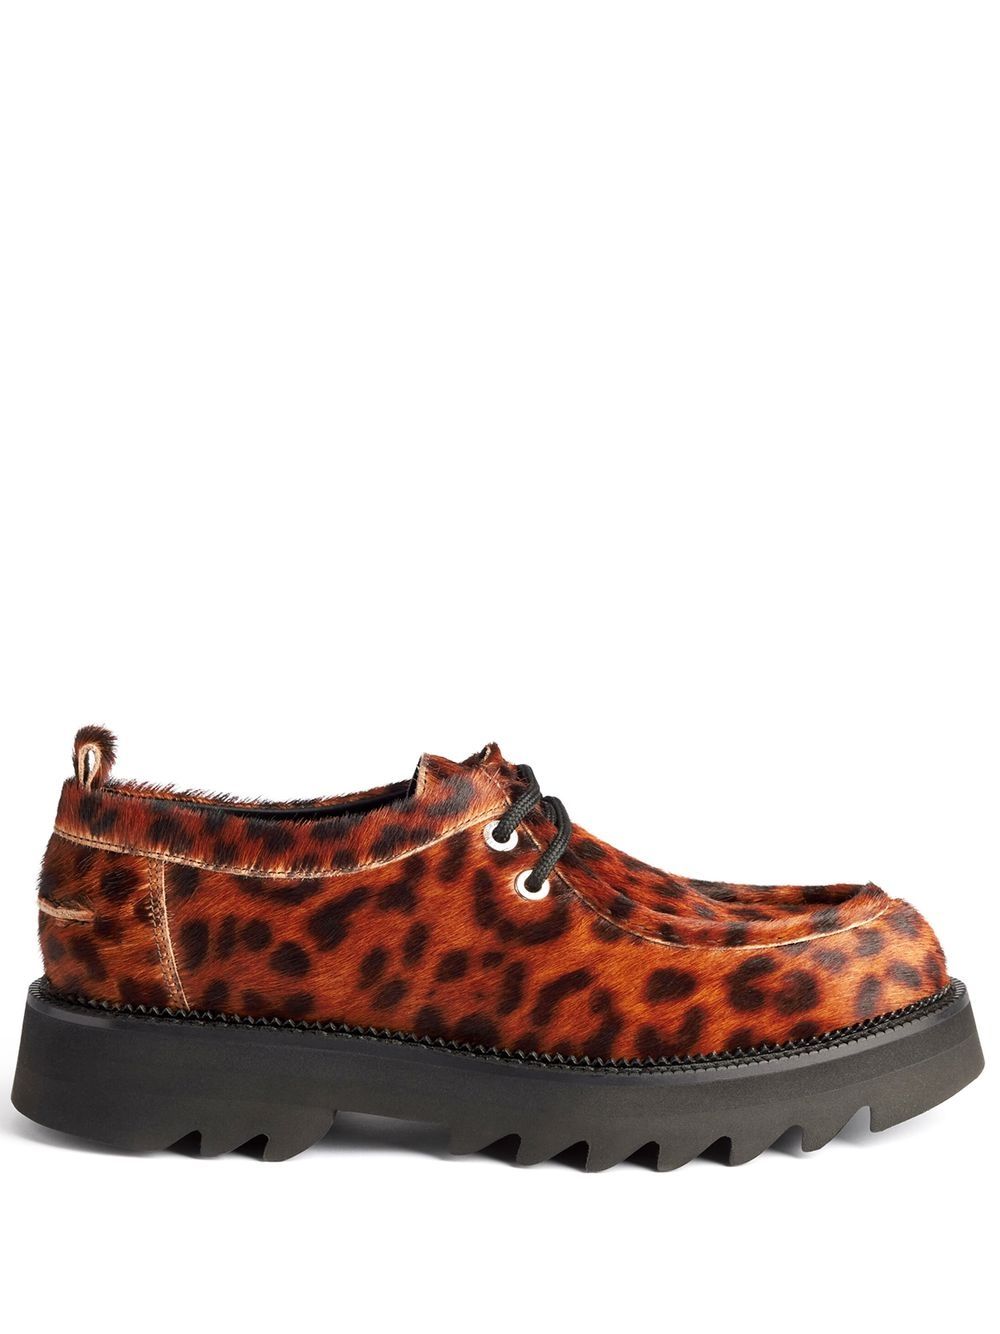 AMI Paris leopard-print lace-up platform shoes - Brown